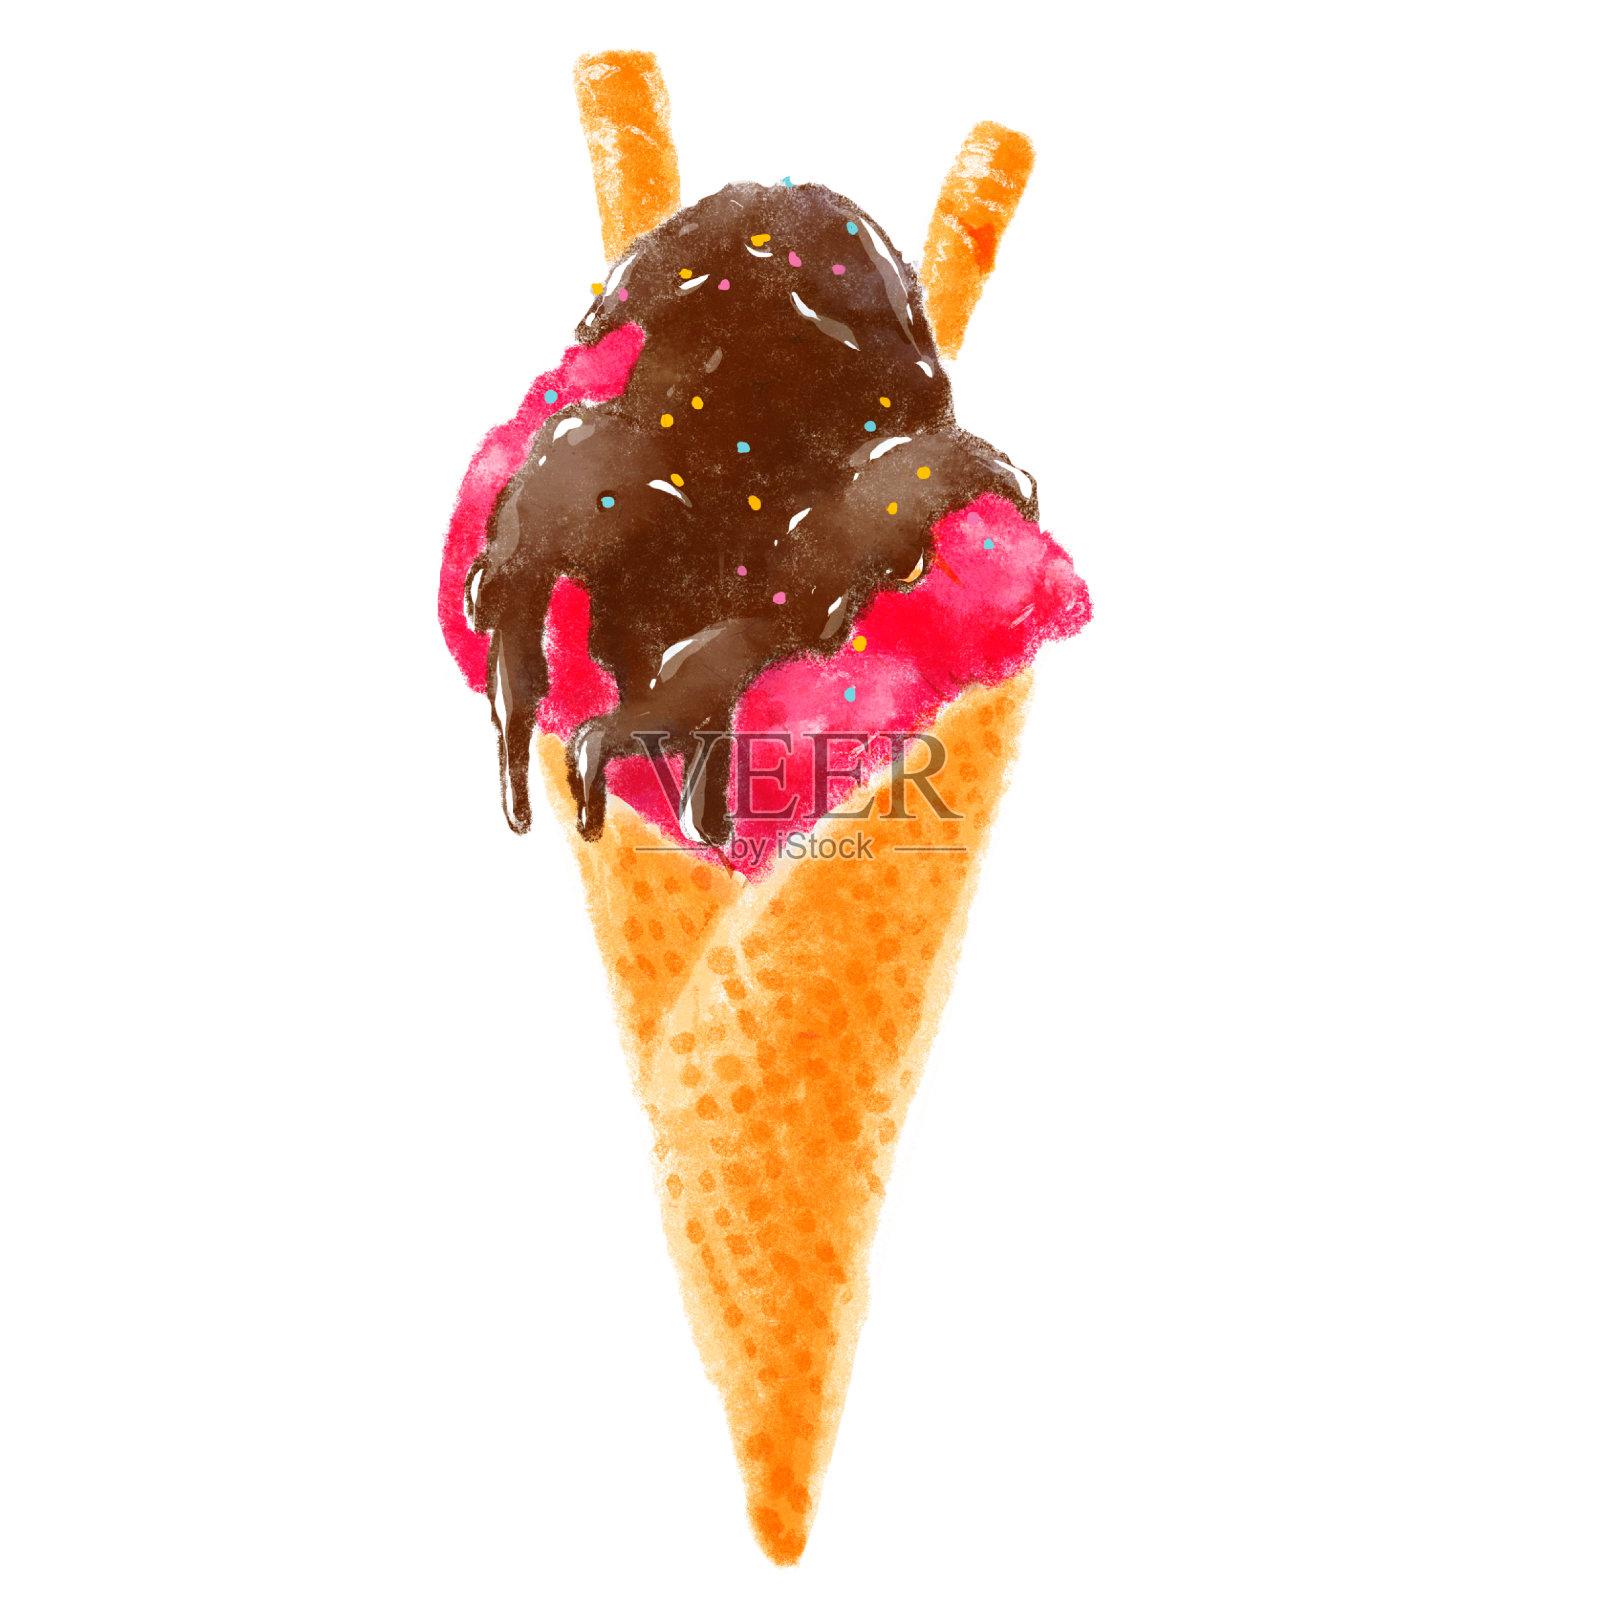 美味多彩的华夫蛋筒冰淇淋孤立在白色的背景。草莓冰淇淋配巧克力和脆皮华夫饼棒。最喜欢的夏季款待。插画图片素材